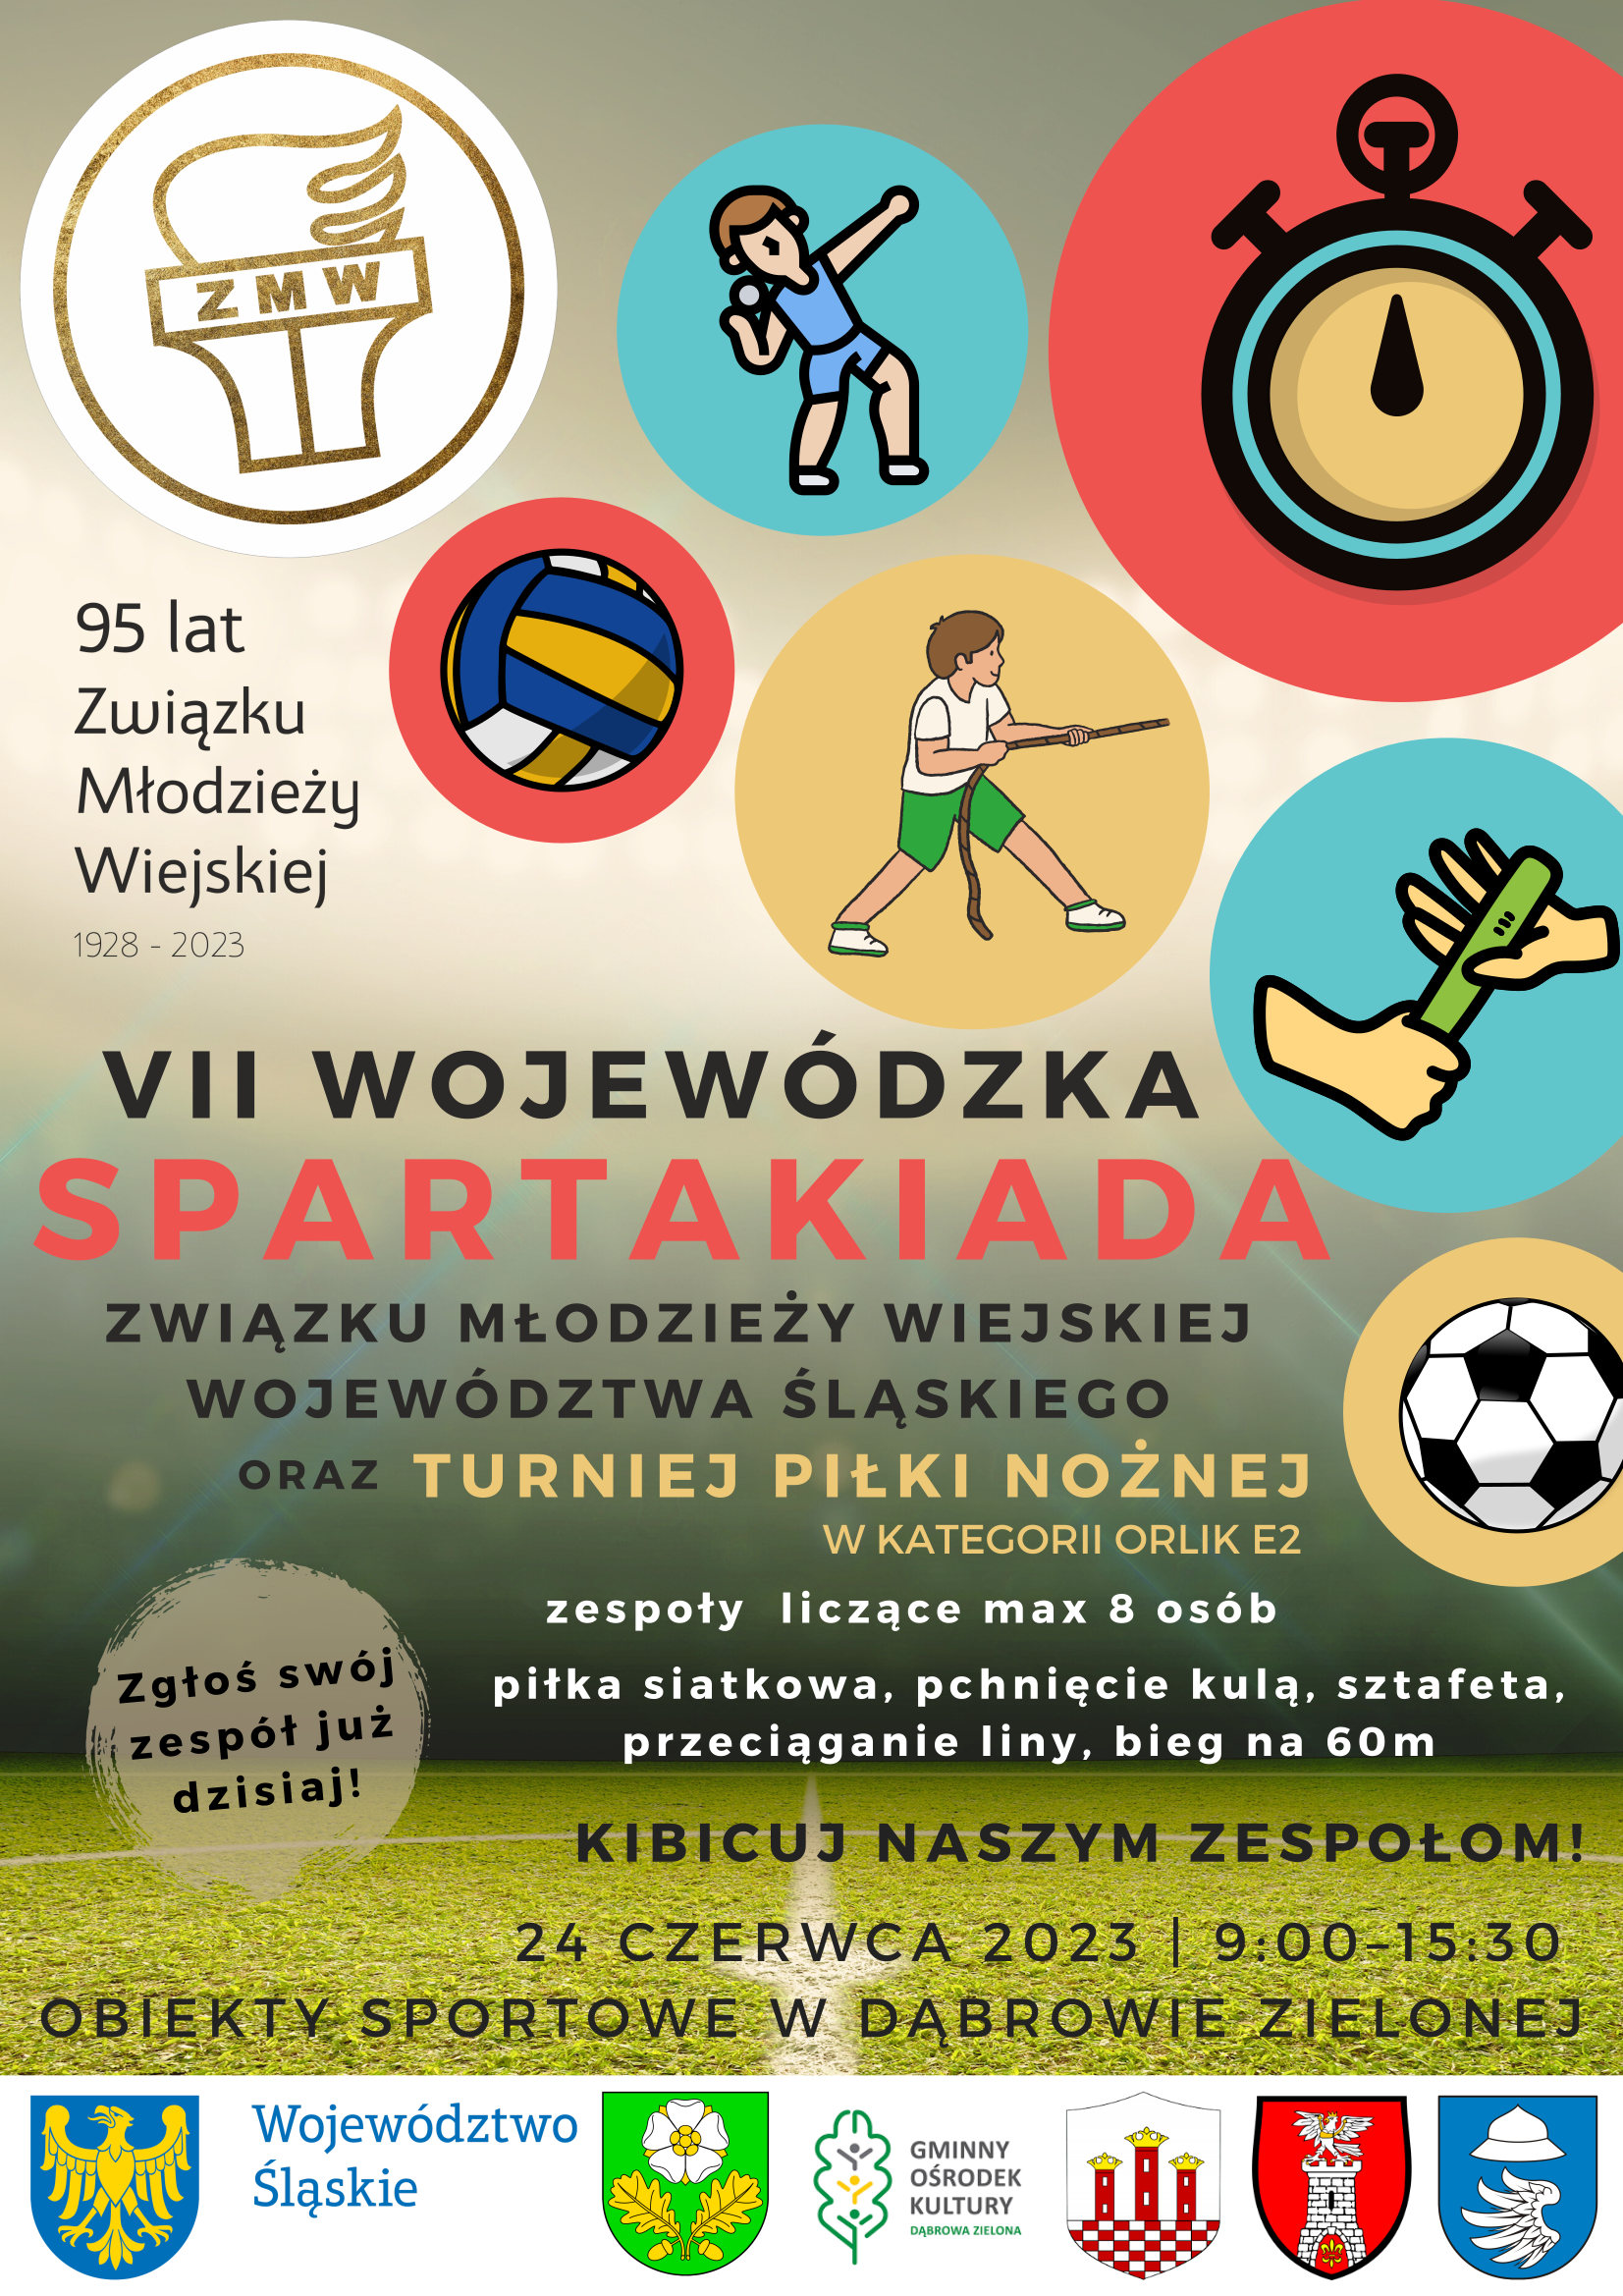 Plakat promujący VII Wojewódzką Spartakiadę Związku Młodzieży Wiejskiej Województwa Śląskiego